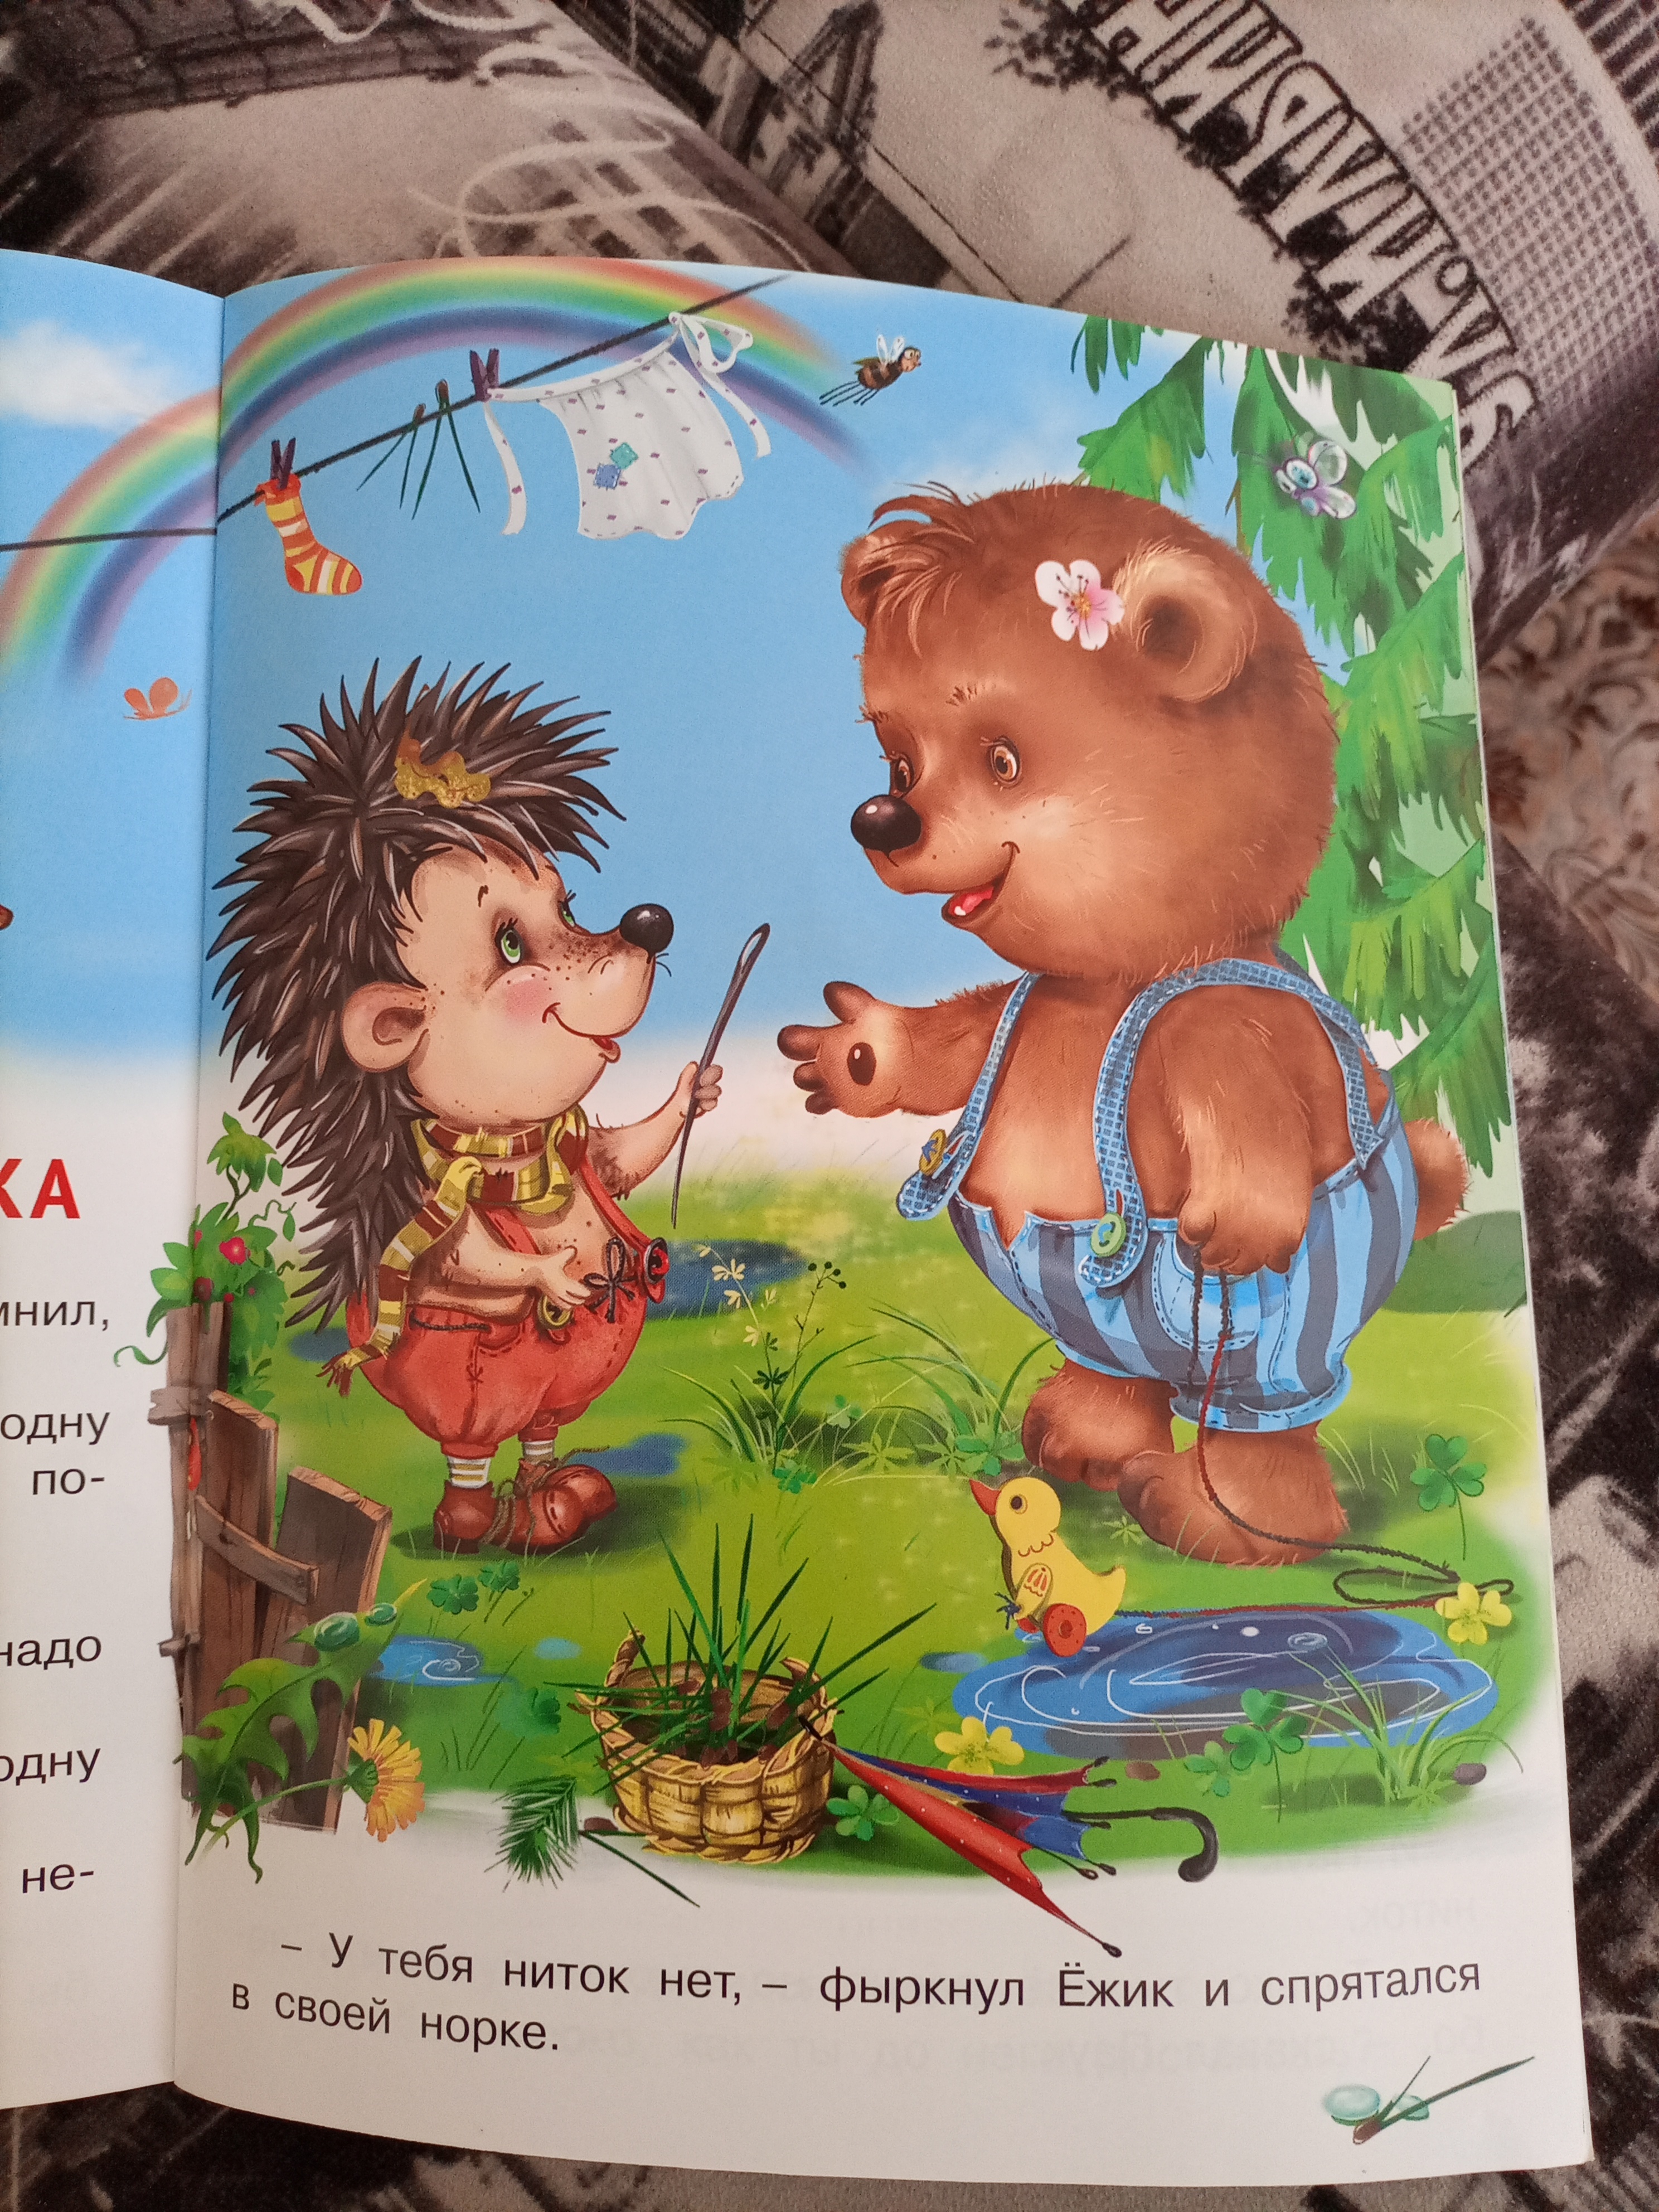 Фотография покупателя товара «Добрые книжки для детей. Медвежонок и другие жители леса»